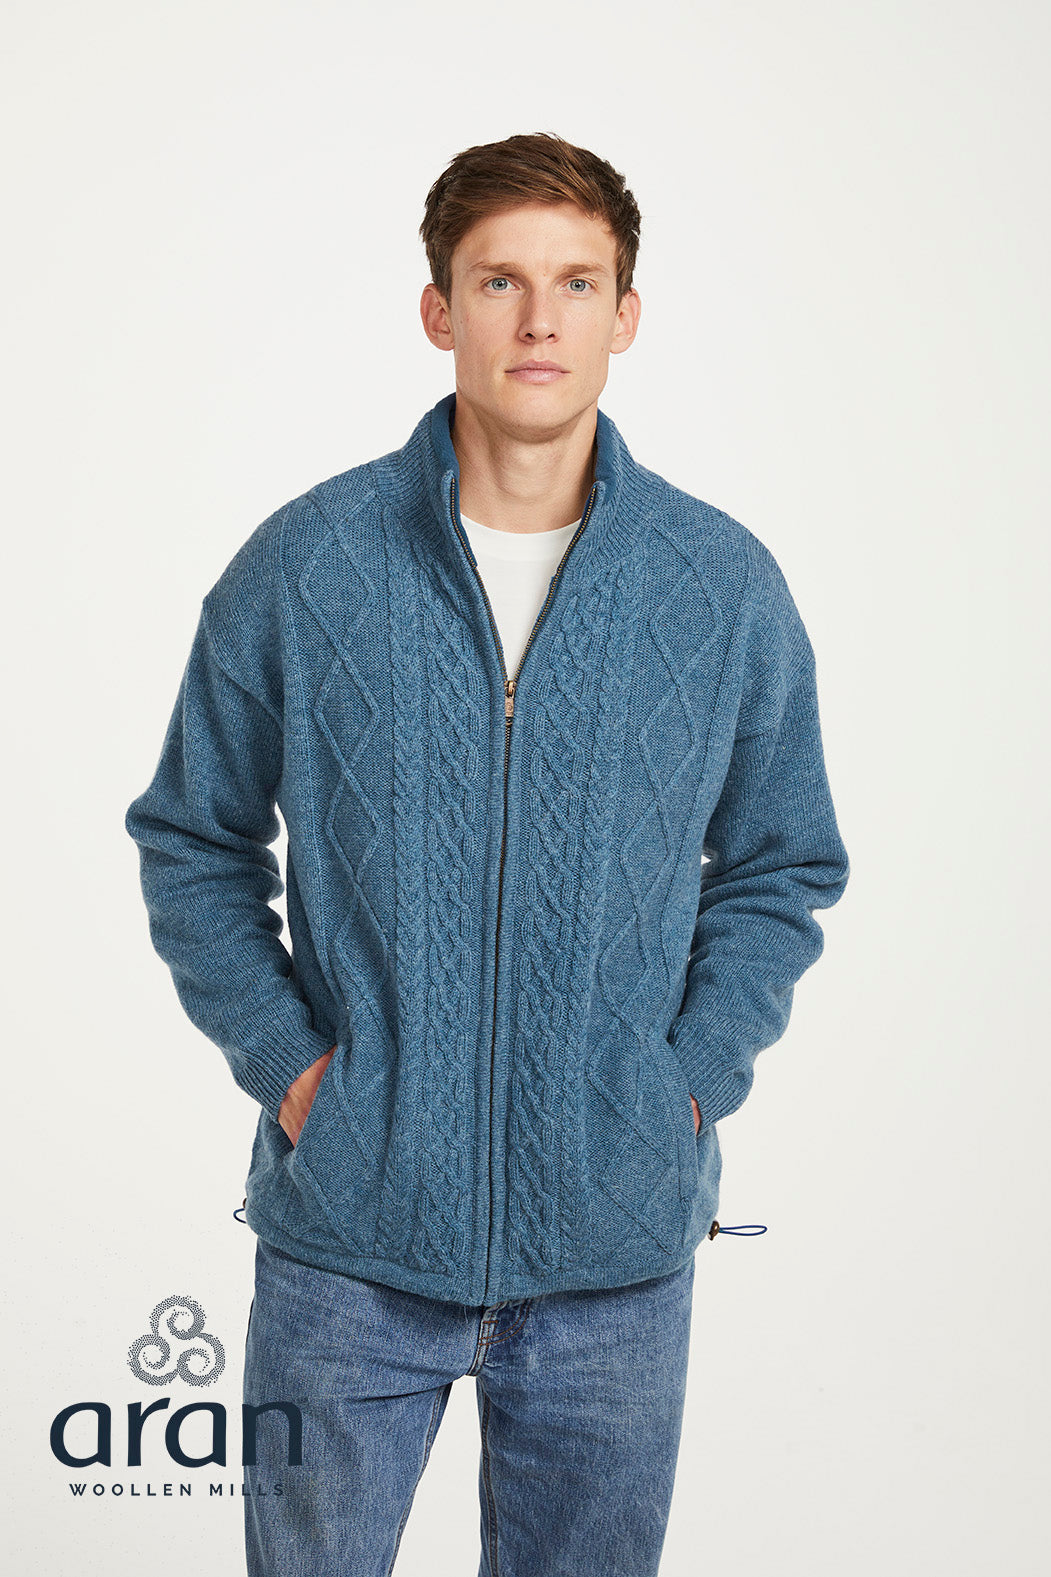 Aran Woollen Mills - S361 | wool men's cardigan